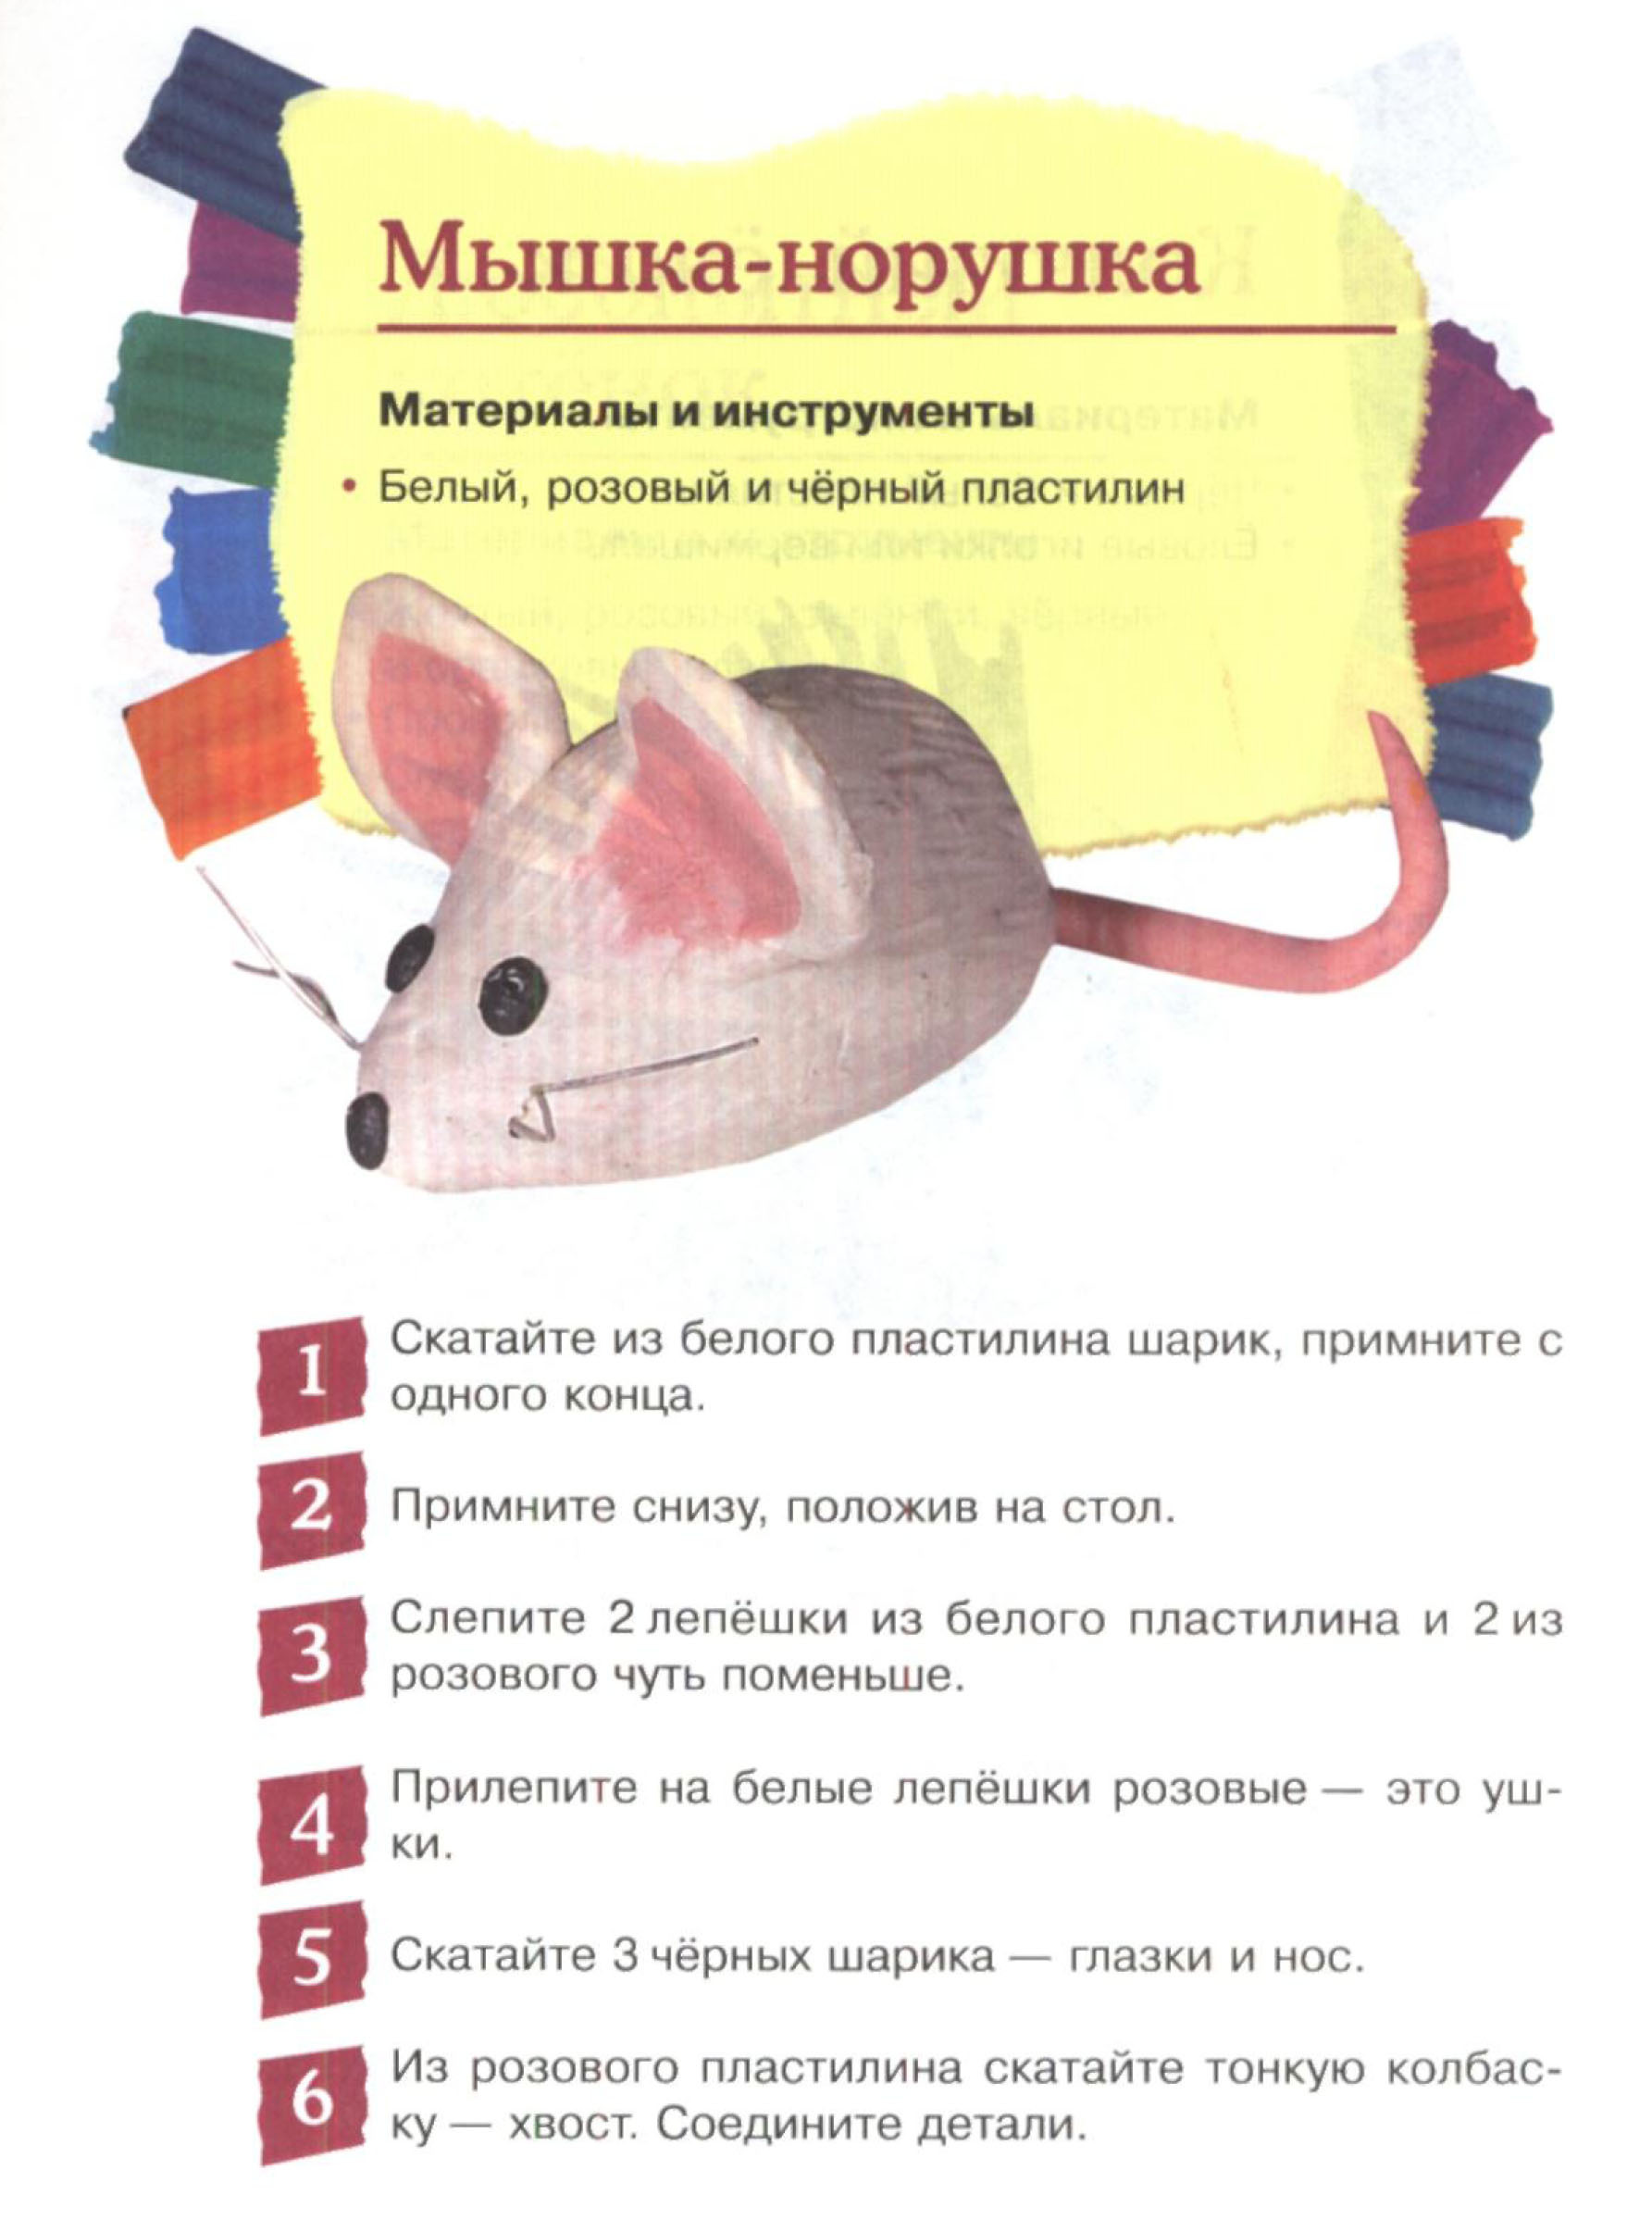 Технологическая карта по лепке мышка-норушка Лыкова